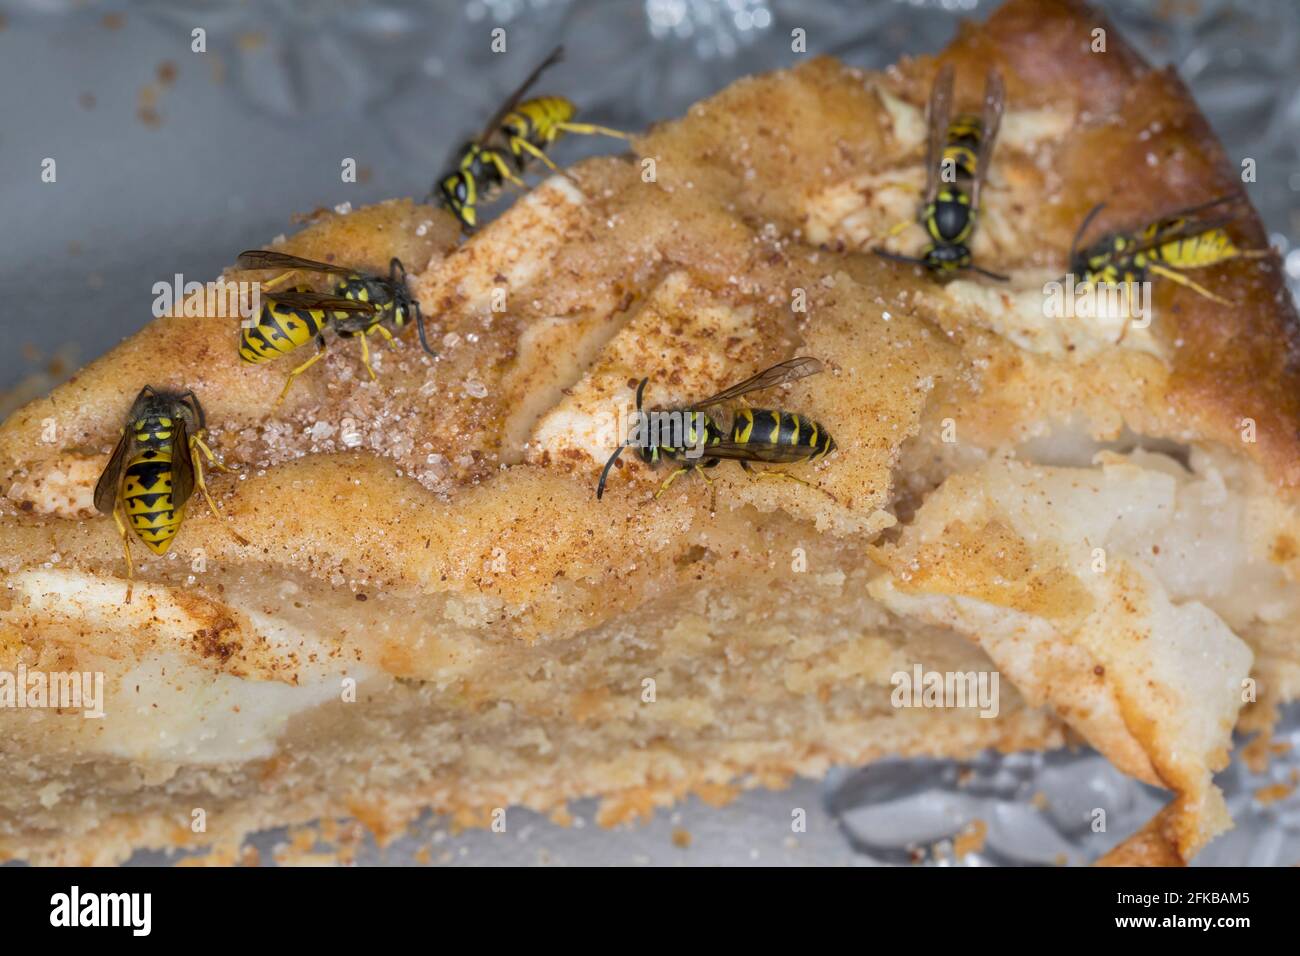 common wasp (Vespula vulgaris, Paravespula vulgaris), wasps eating from an apple cake, Germany Stock Photo